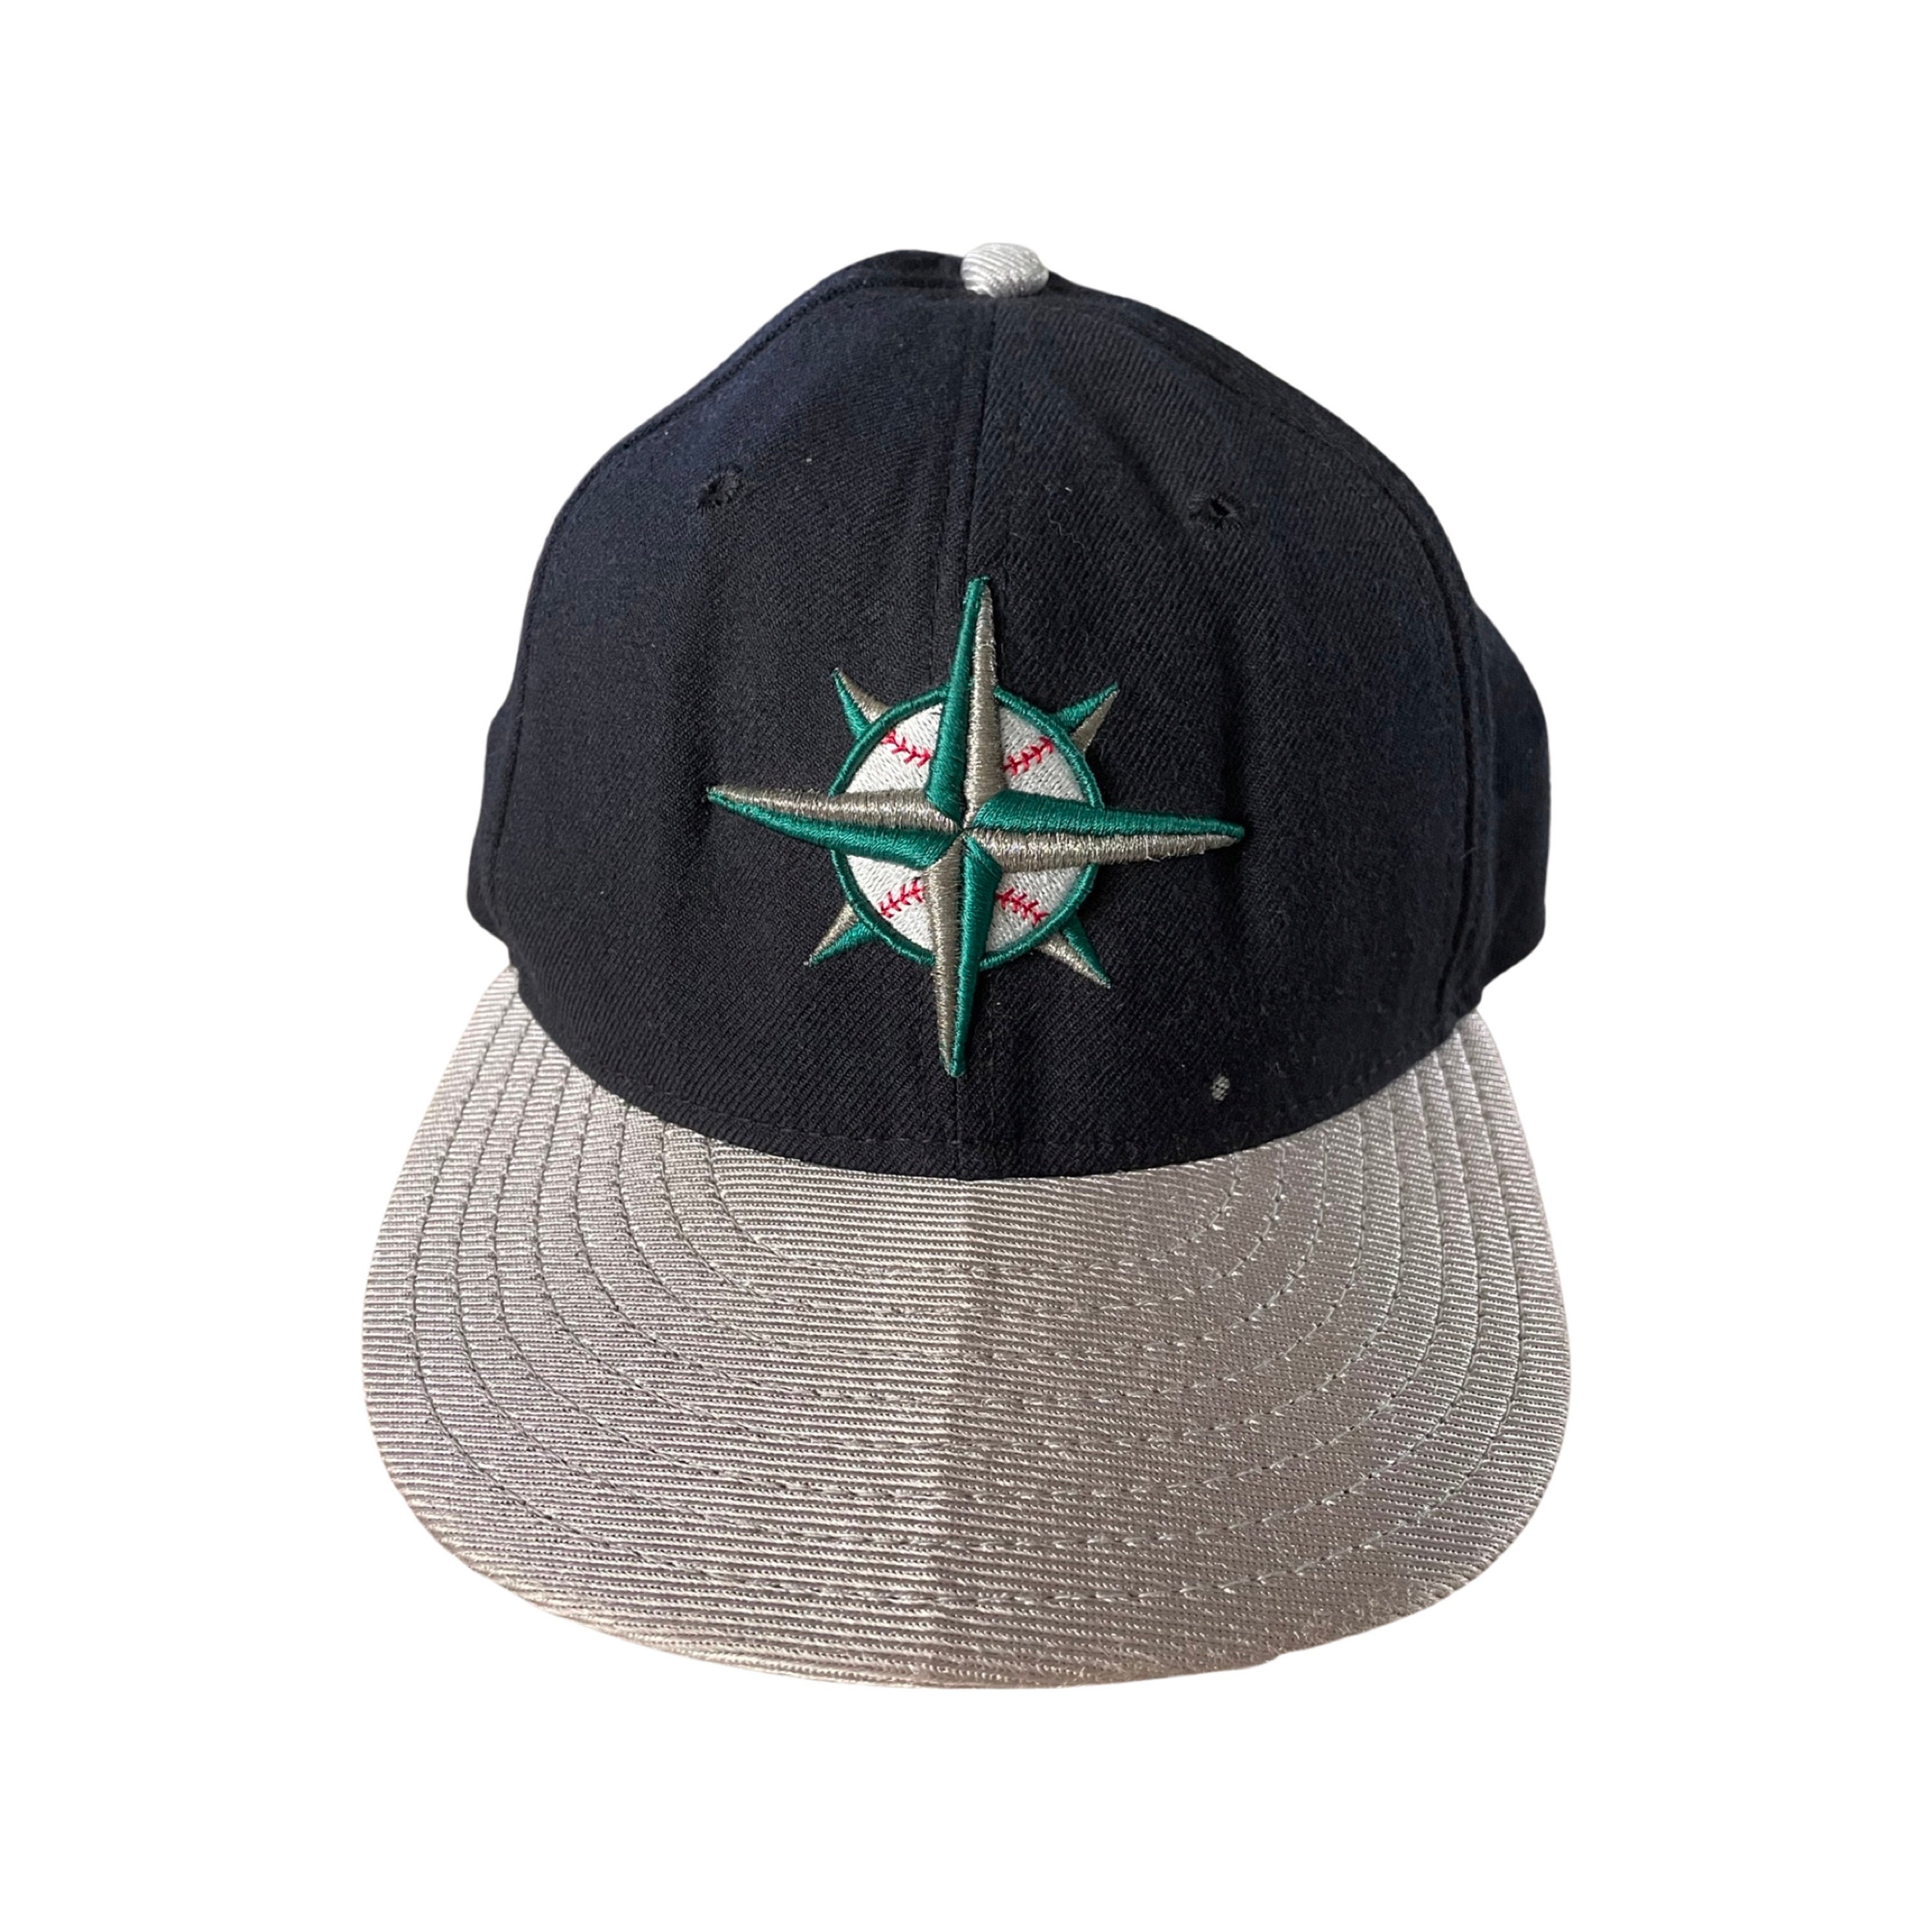 Chicago blackhawks vintage hat - Gem